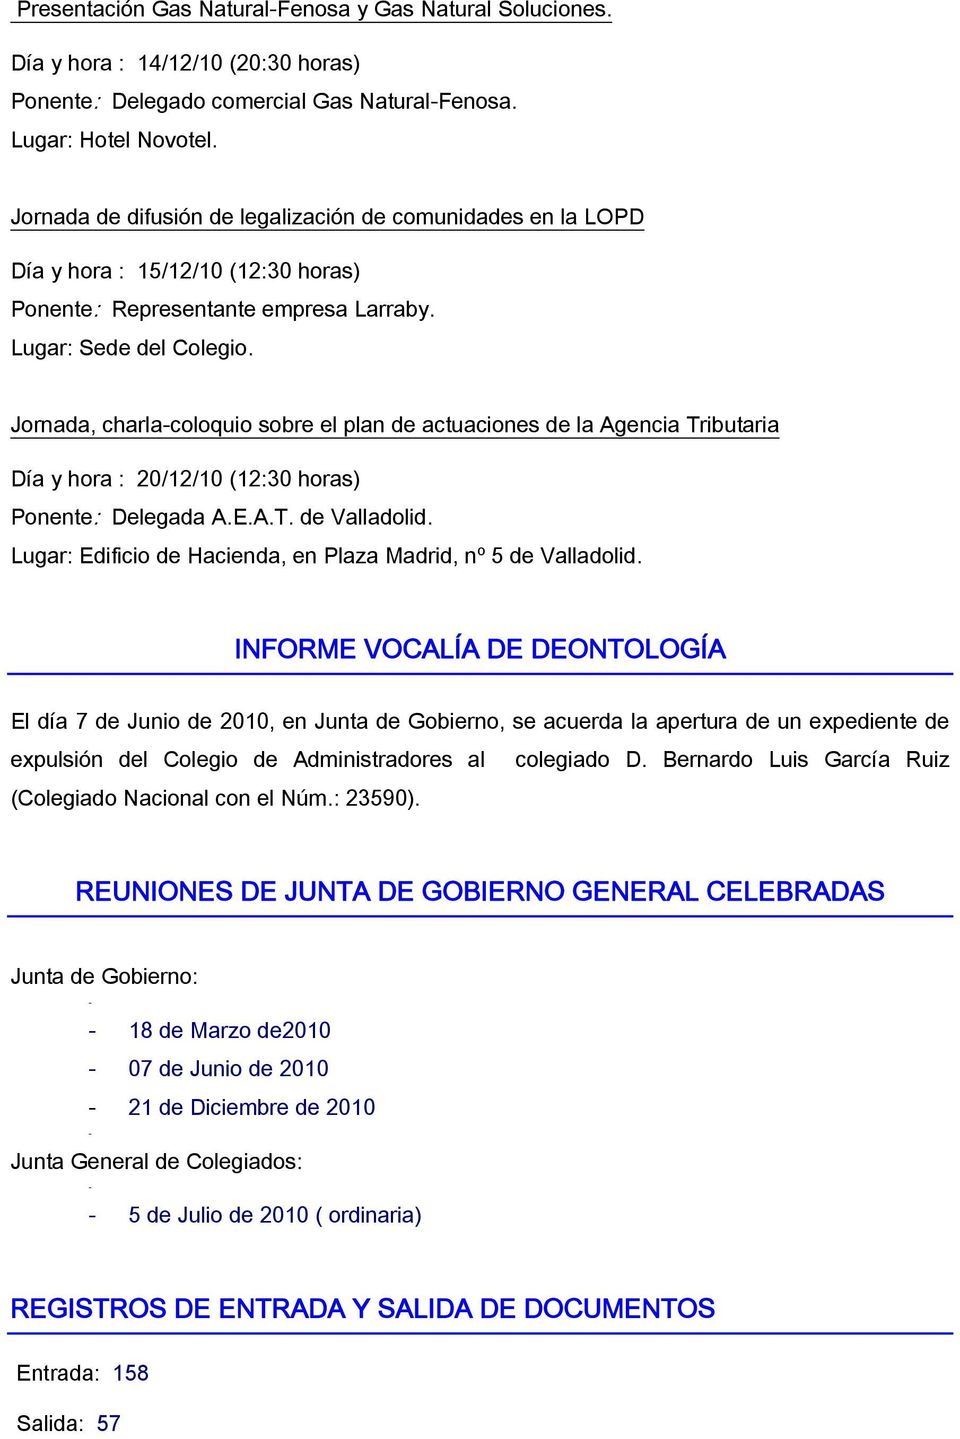 Jornada, charla-coloquio sobre el plan de actuaciones de la Agencia Tributaria Día y hora : 20/12/10 (12:30 horas) Ponente: Delegada A.E.A.T. de Valladolid.